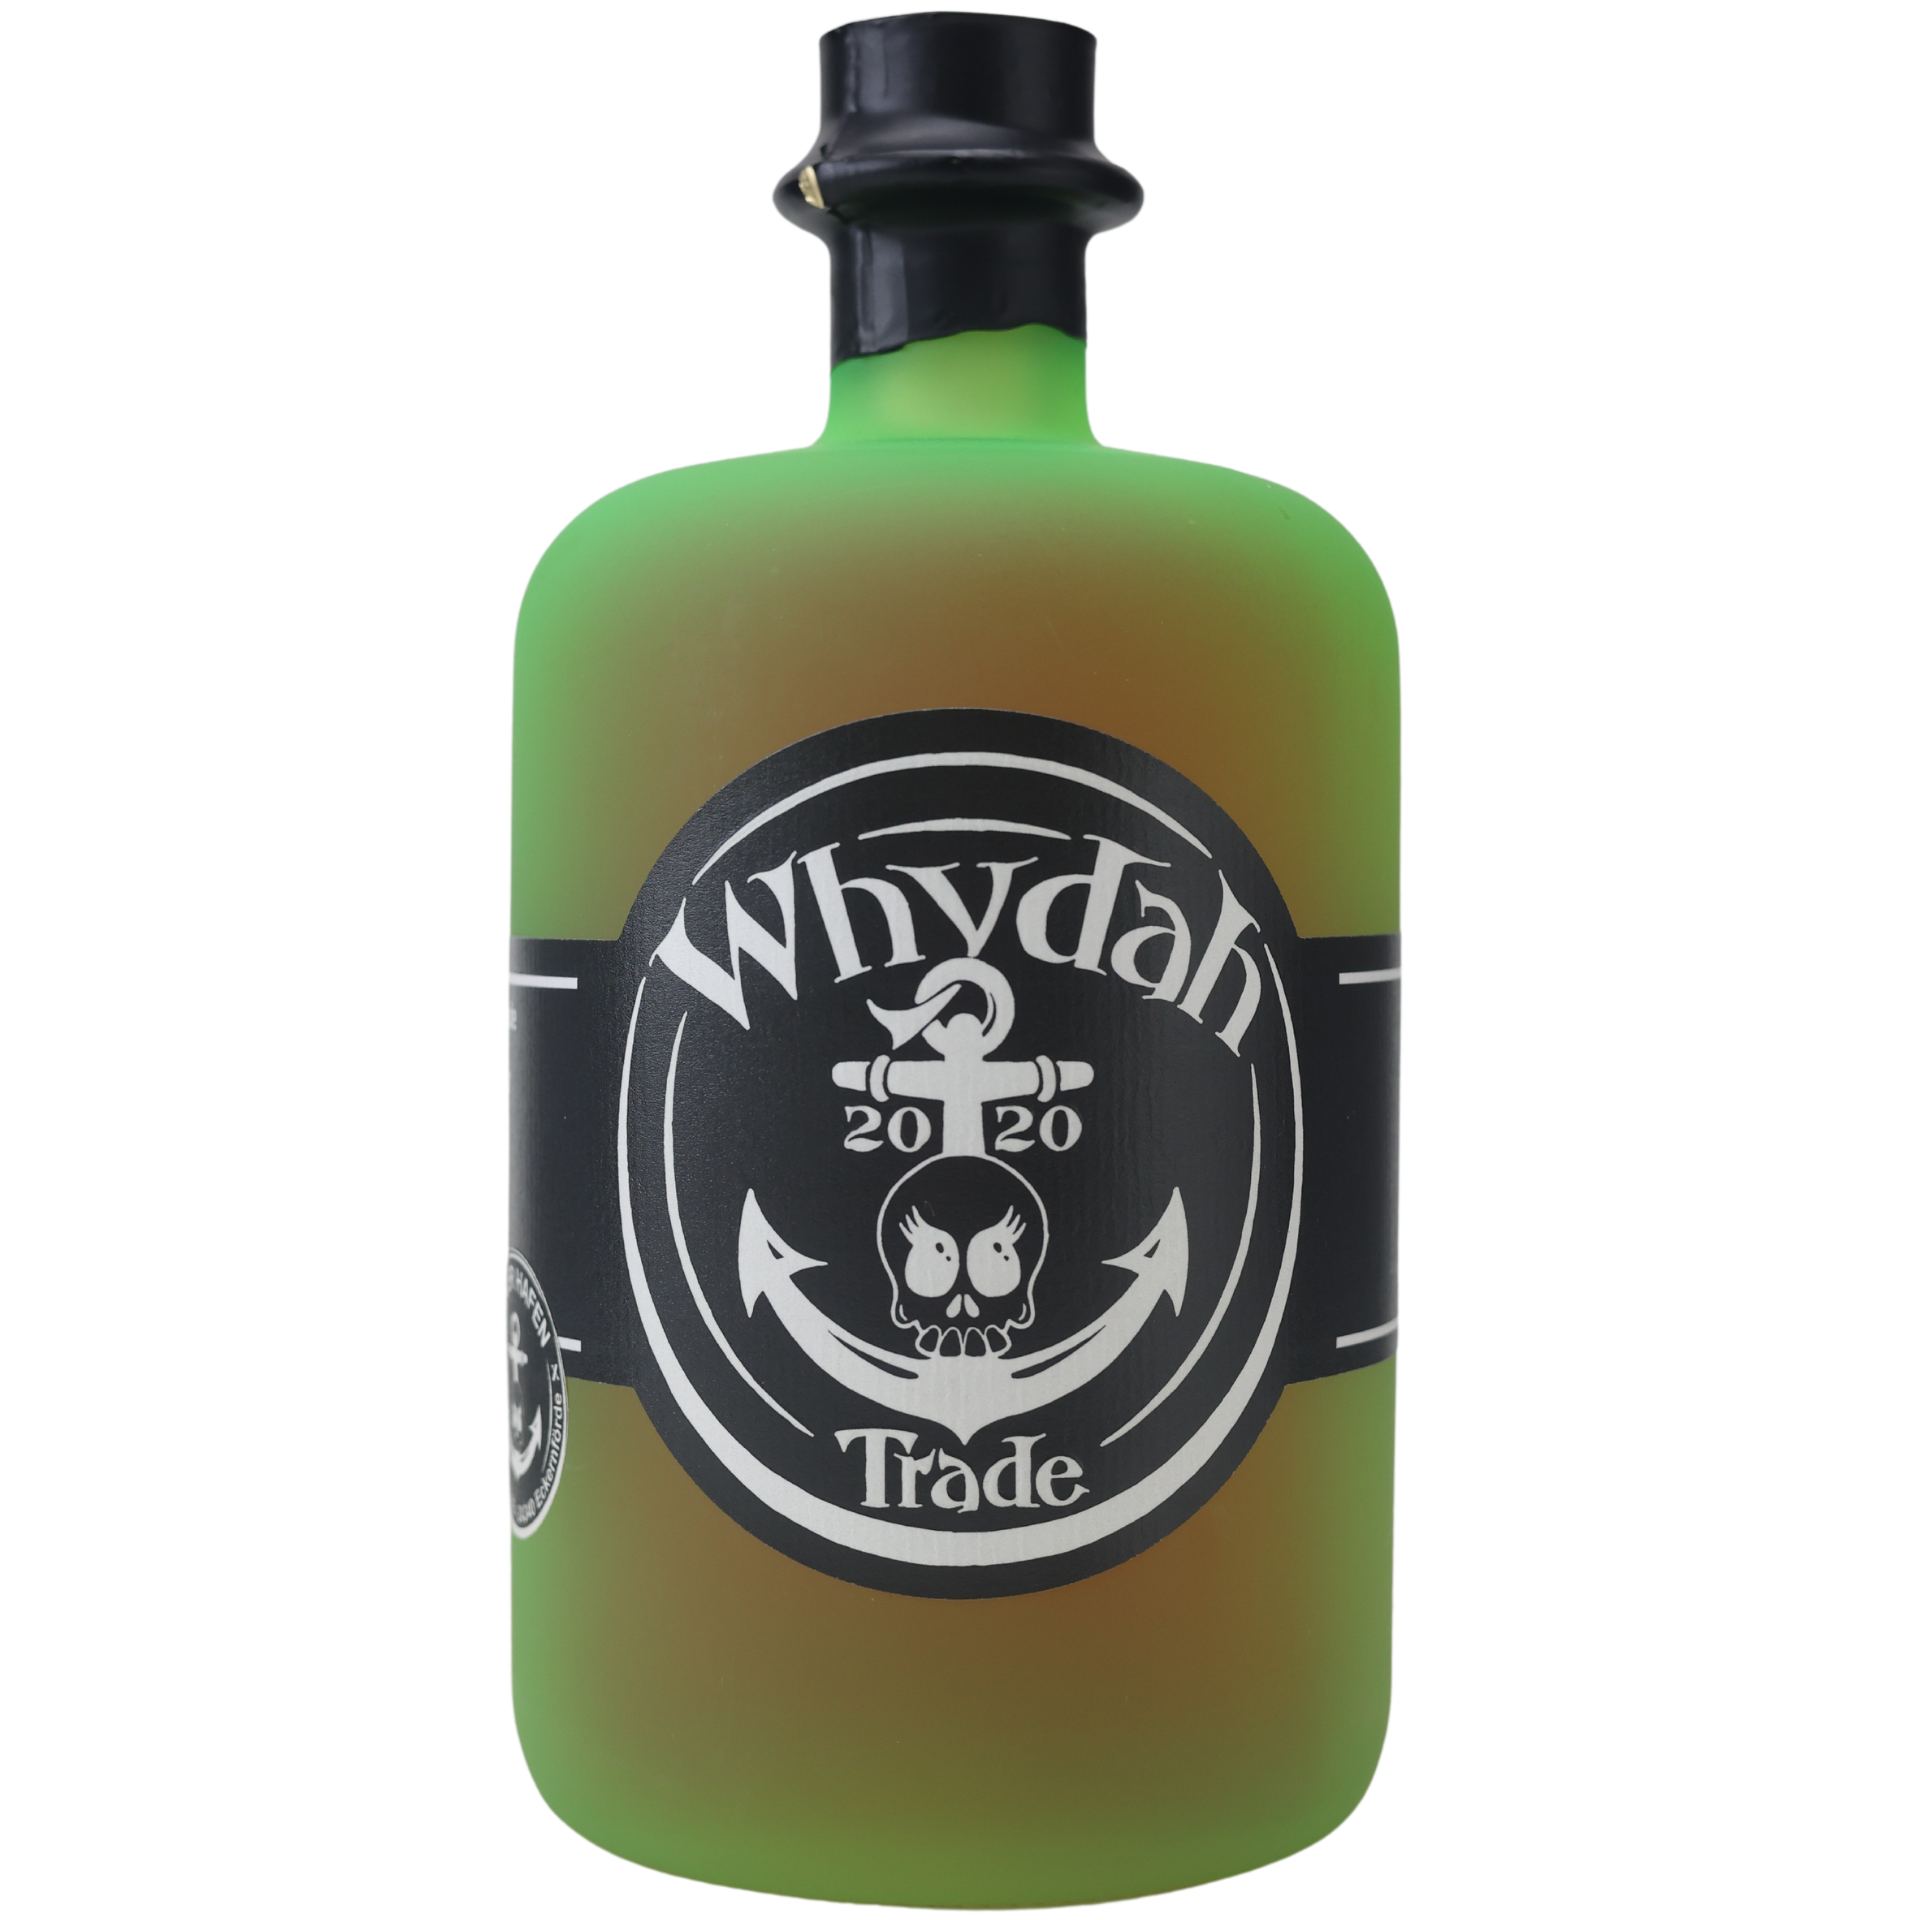 Whydah Trade Rum-Likör 35% 0,7l